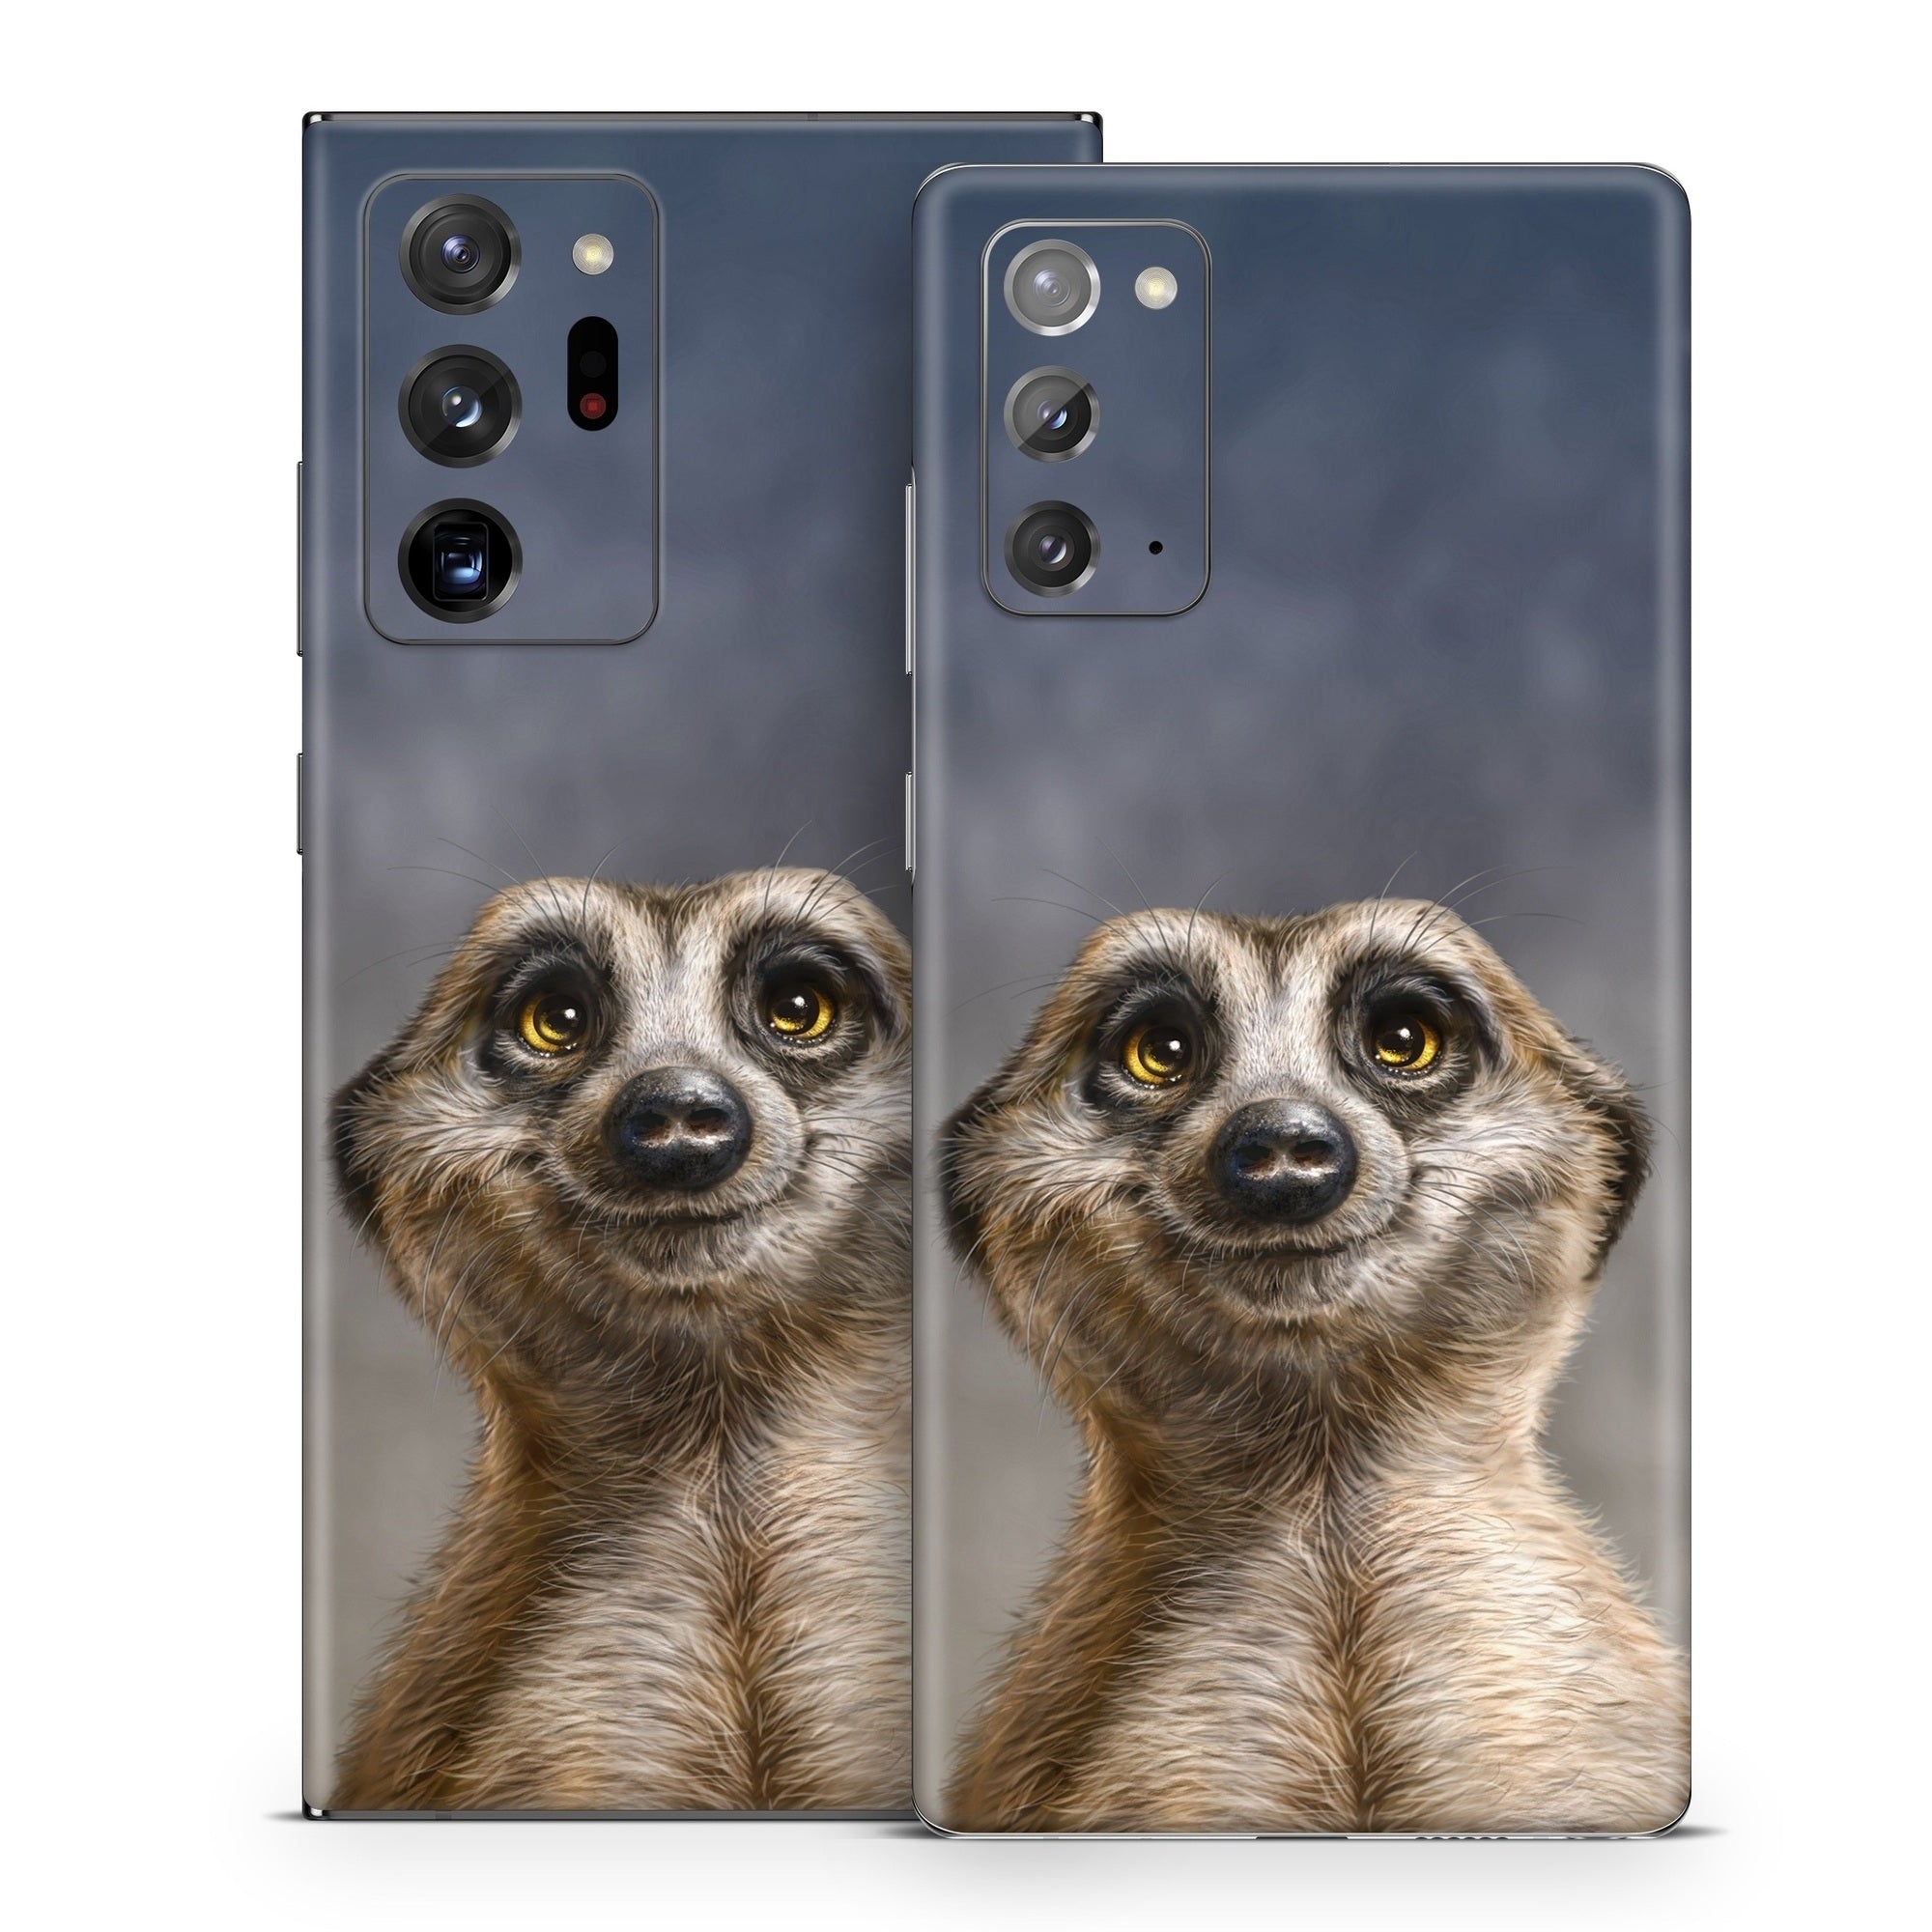 Meerkat - Samsung Galaxy Note 20 Skin